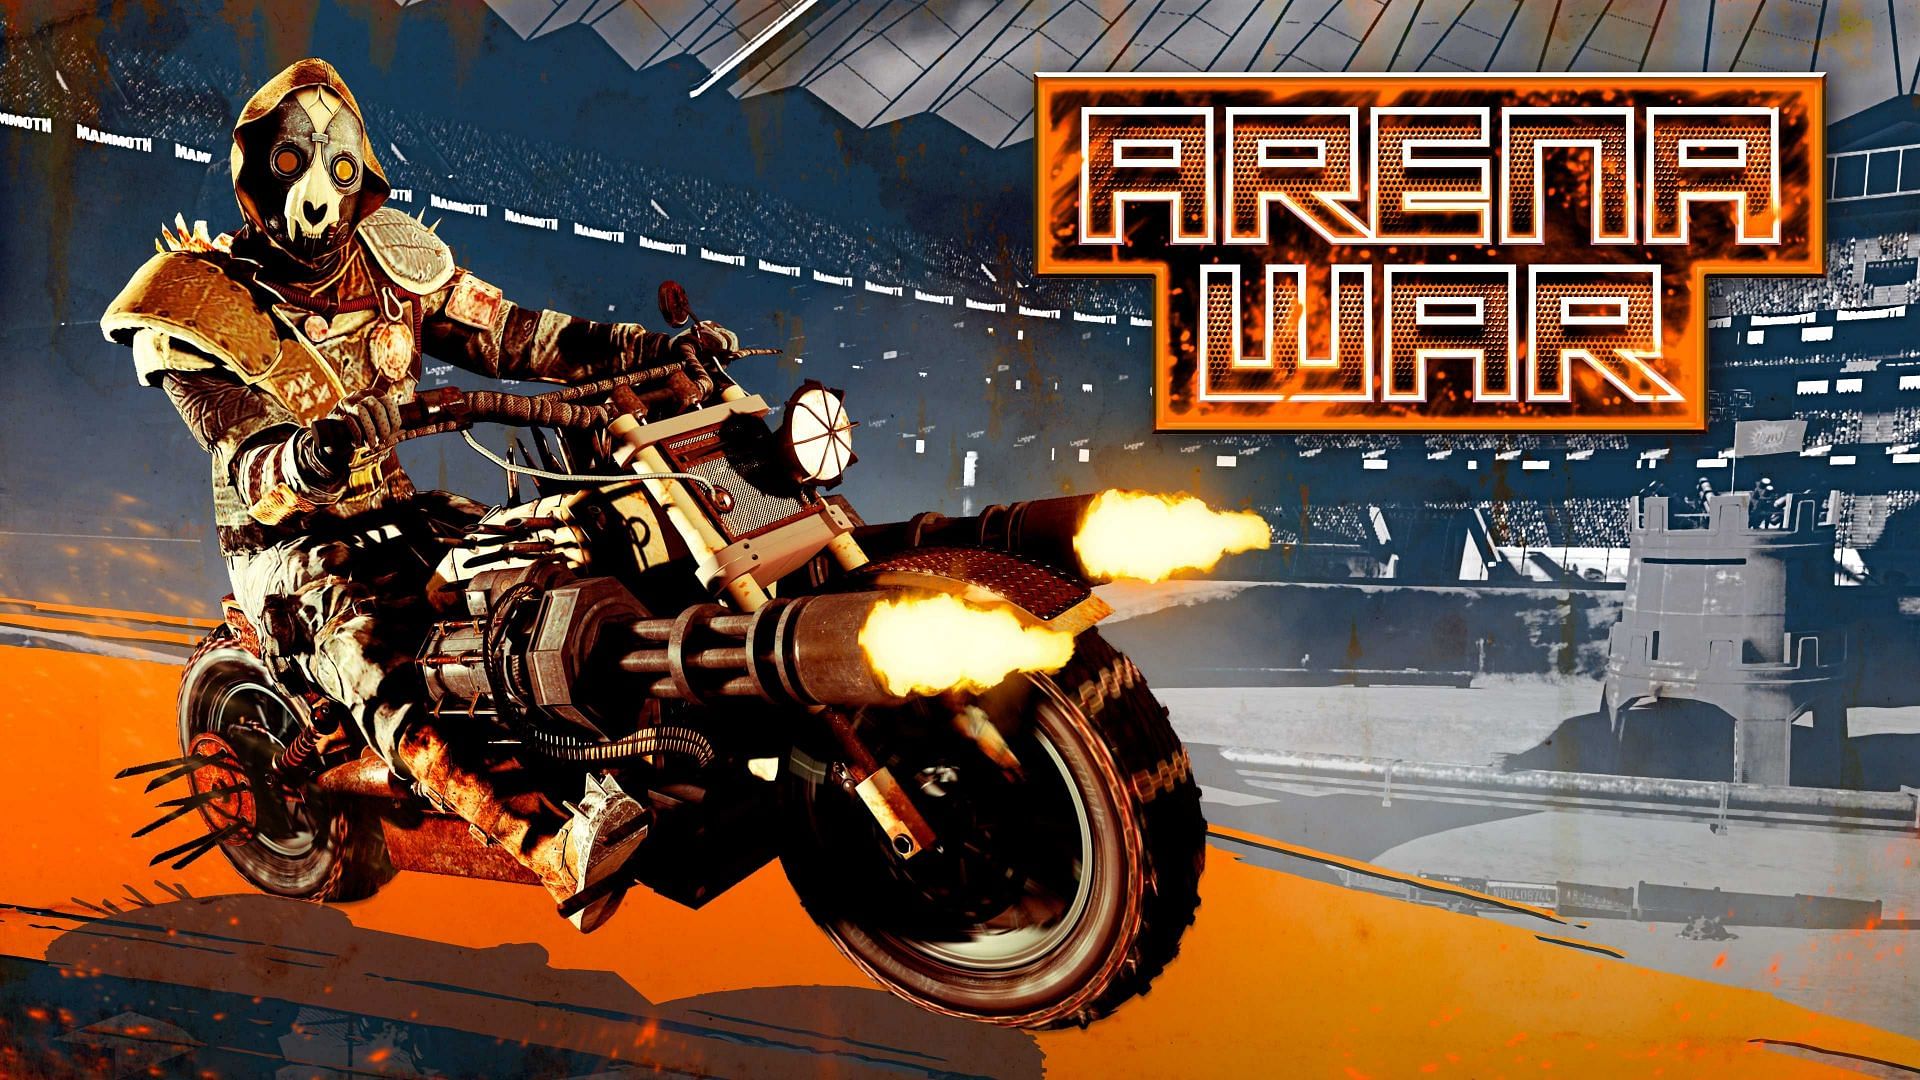 GTA Online: Arena War guide, how to enter, workshops & more!